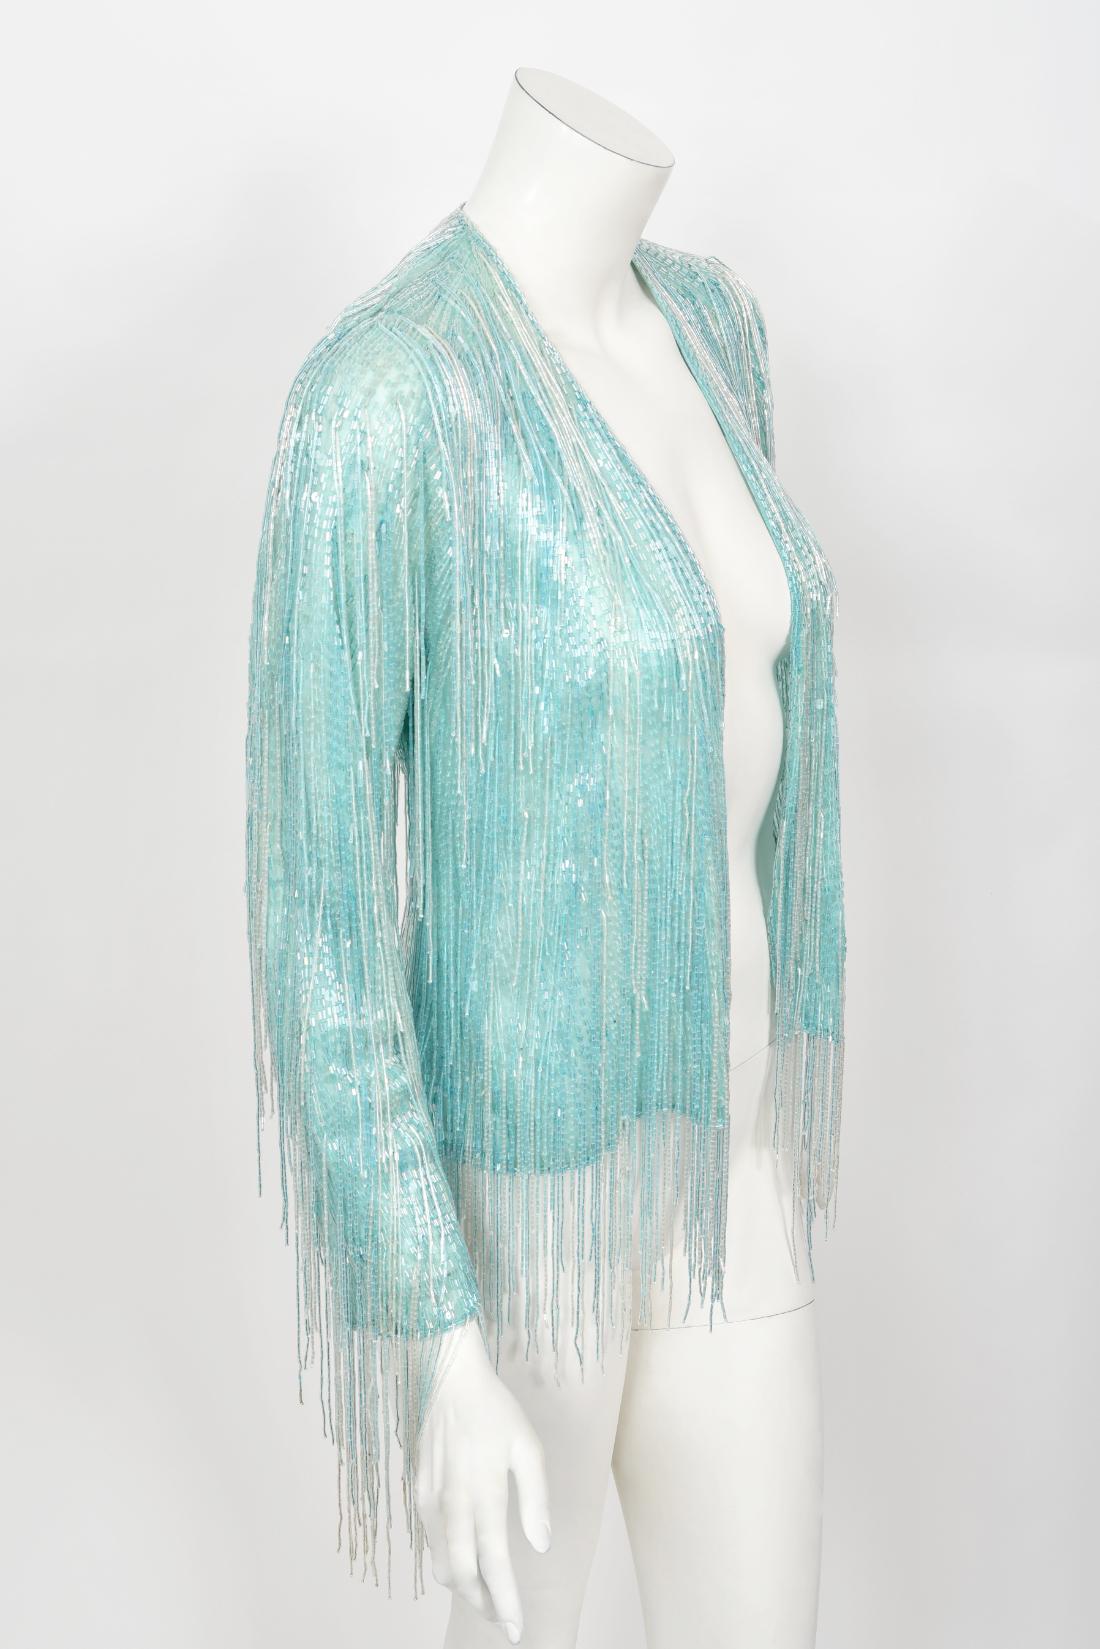 Halston Couture - Cardigan disco vintage à franges en soie perlée bleu glace, années 1970 1